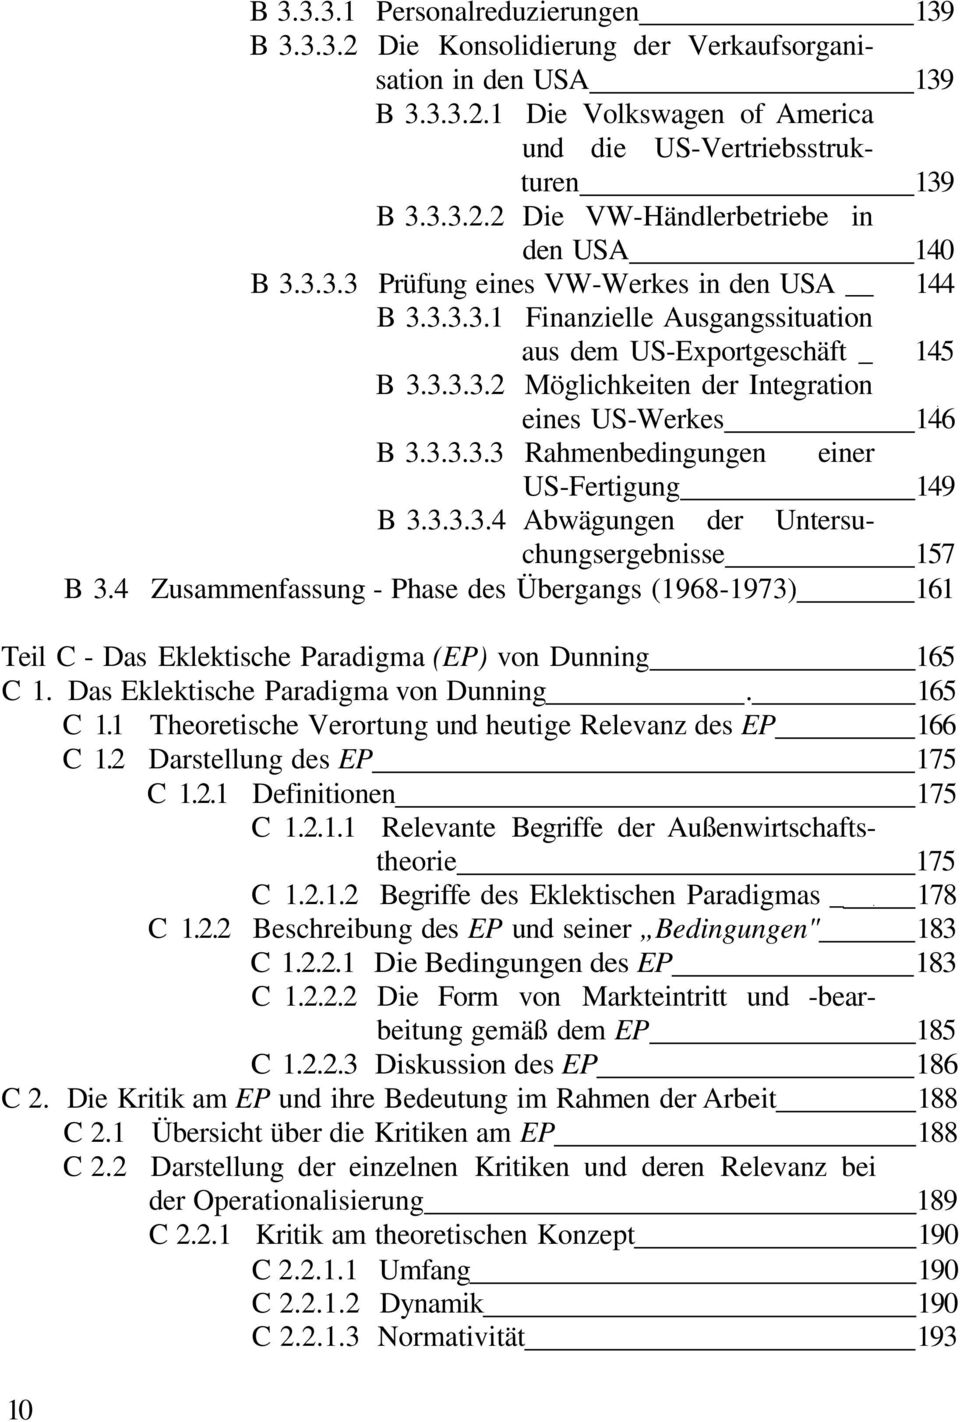 3.3.3.4 Abwägungen der Untersuchungsergebnisse 157 B 3.4 Zusammenfassung - Phase des Übergangs (1968-1973) 161 Teil C - Das Eklektische Paradigma (EP) von Dunning 165 C 1.